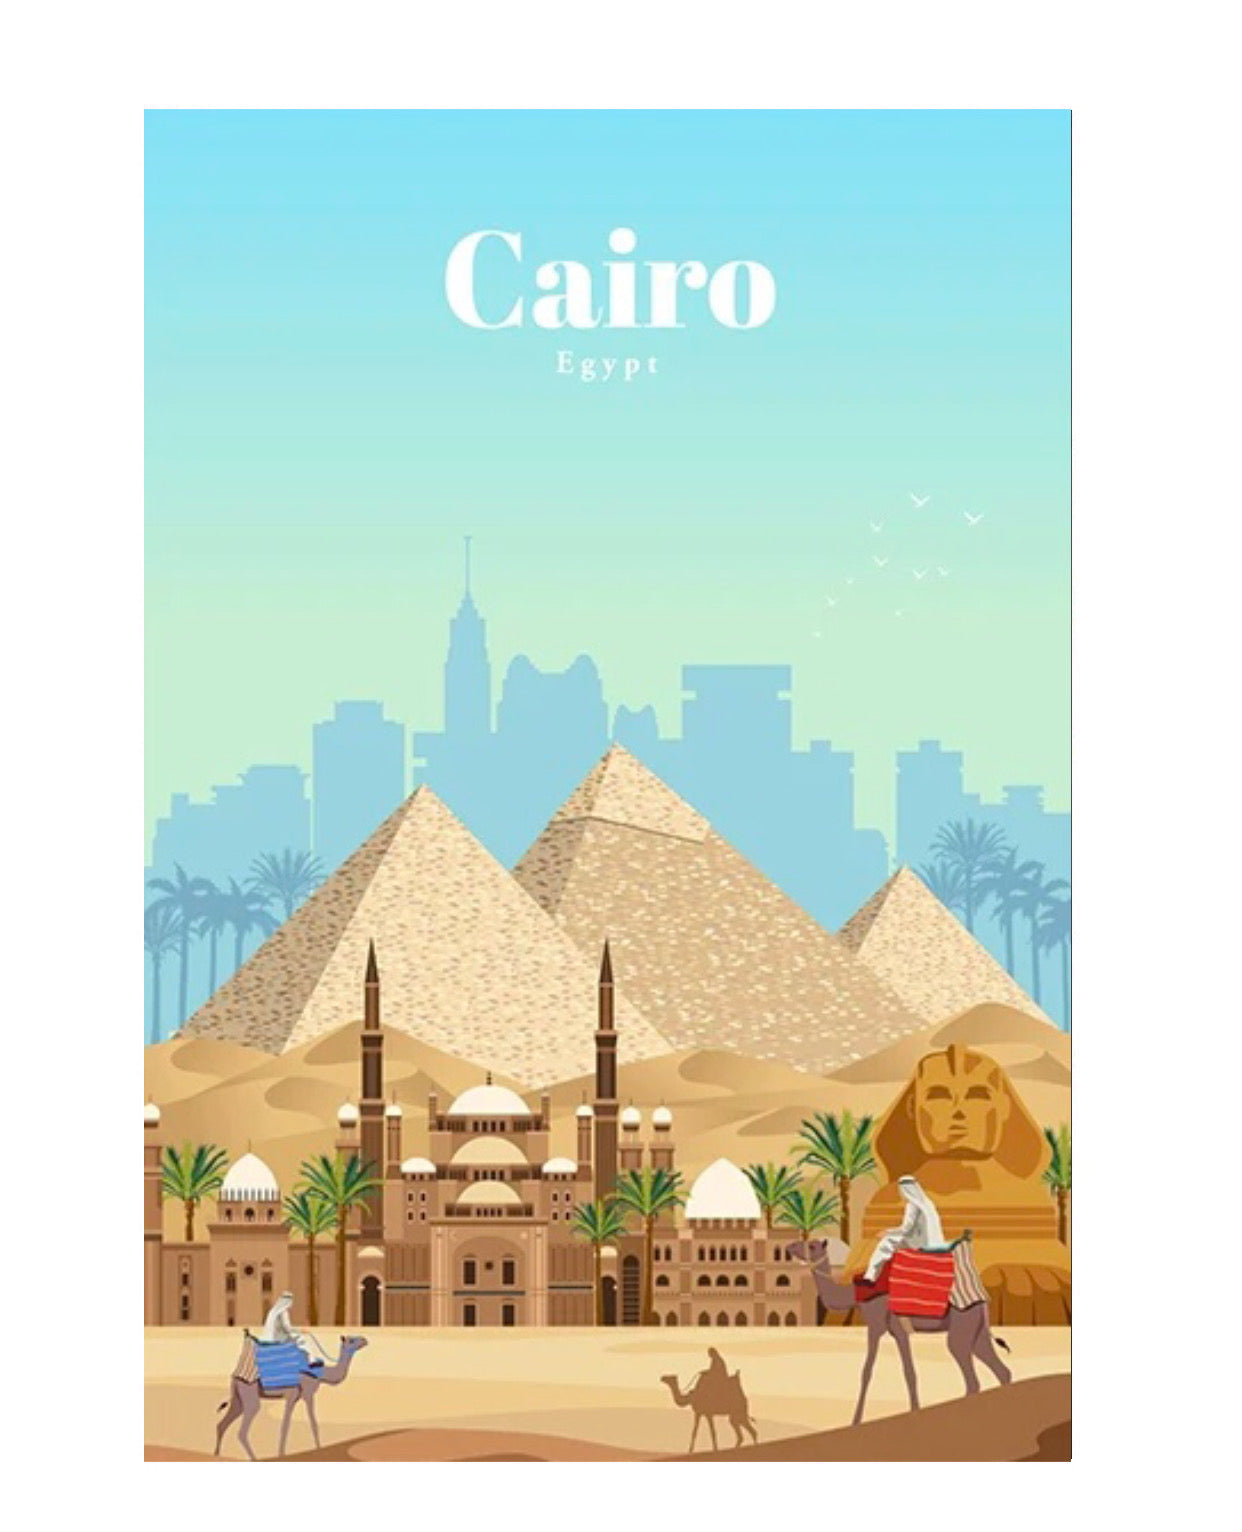 cairo, egypt poster